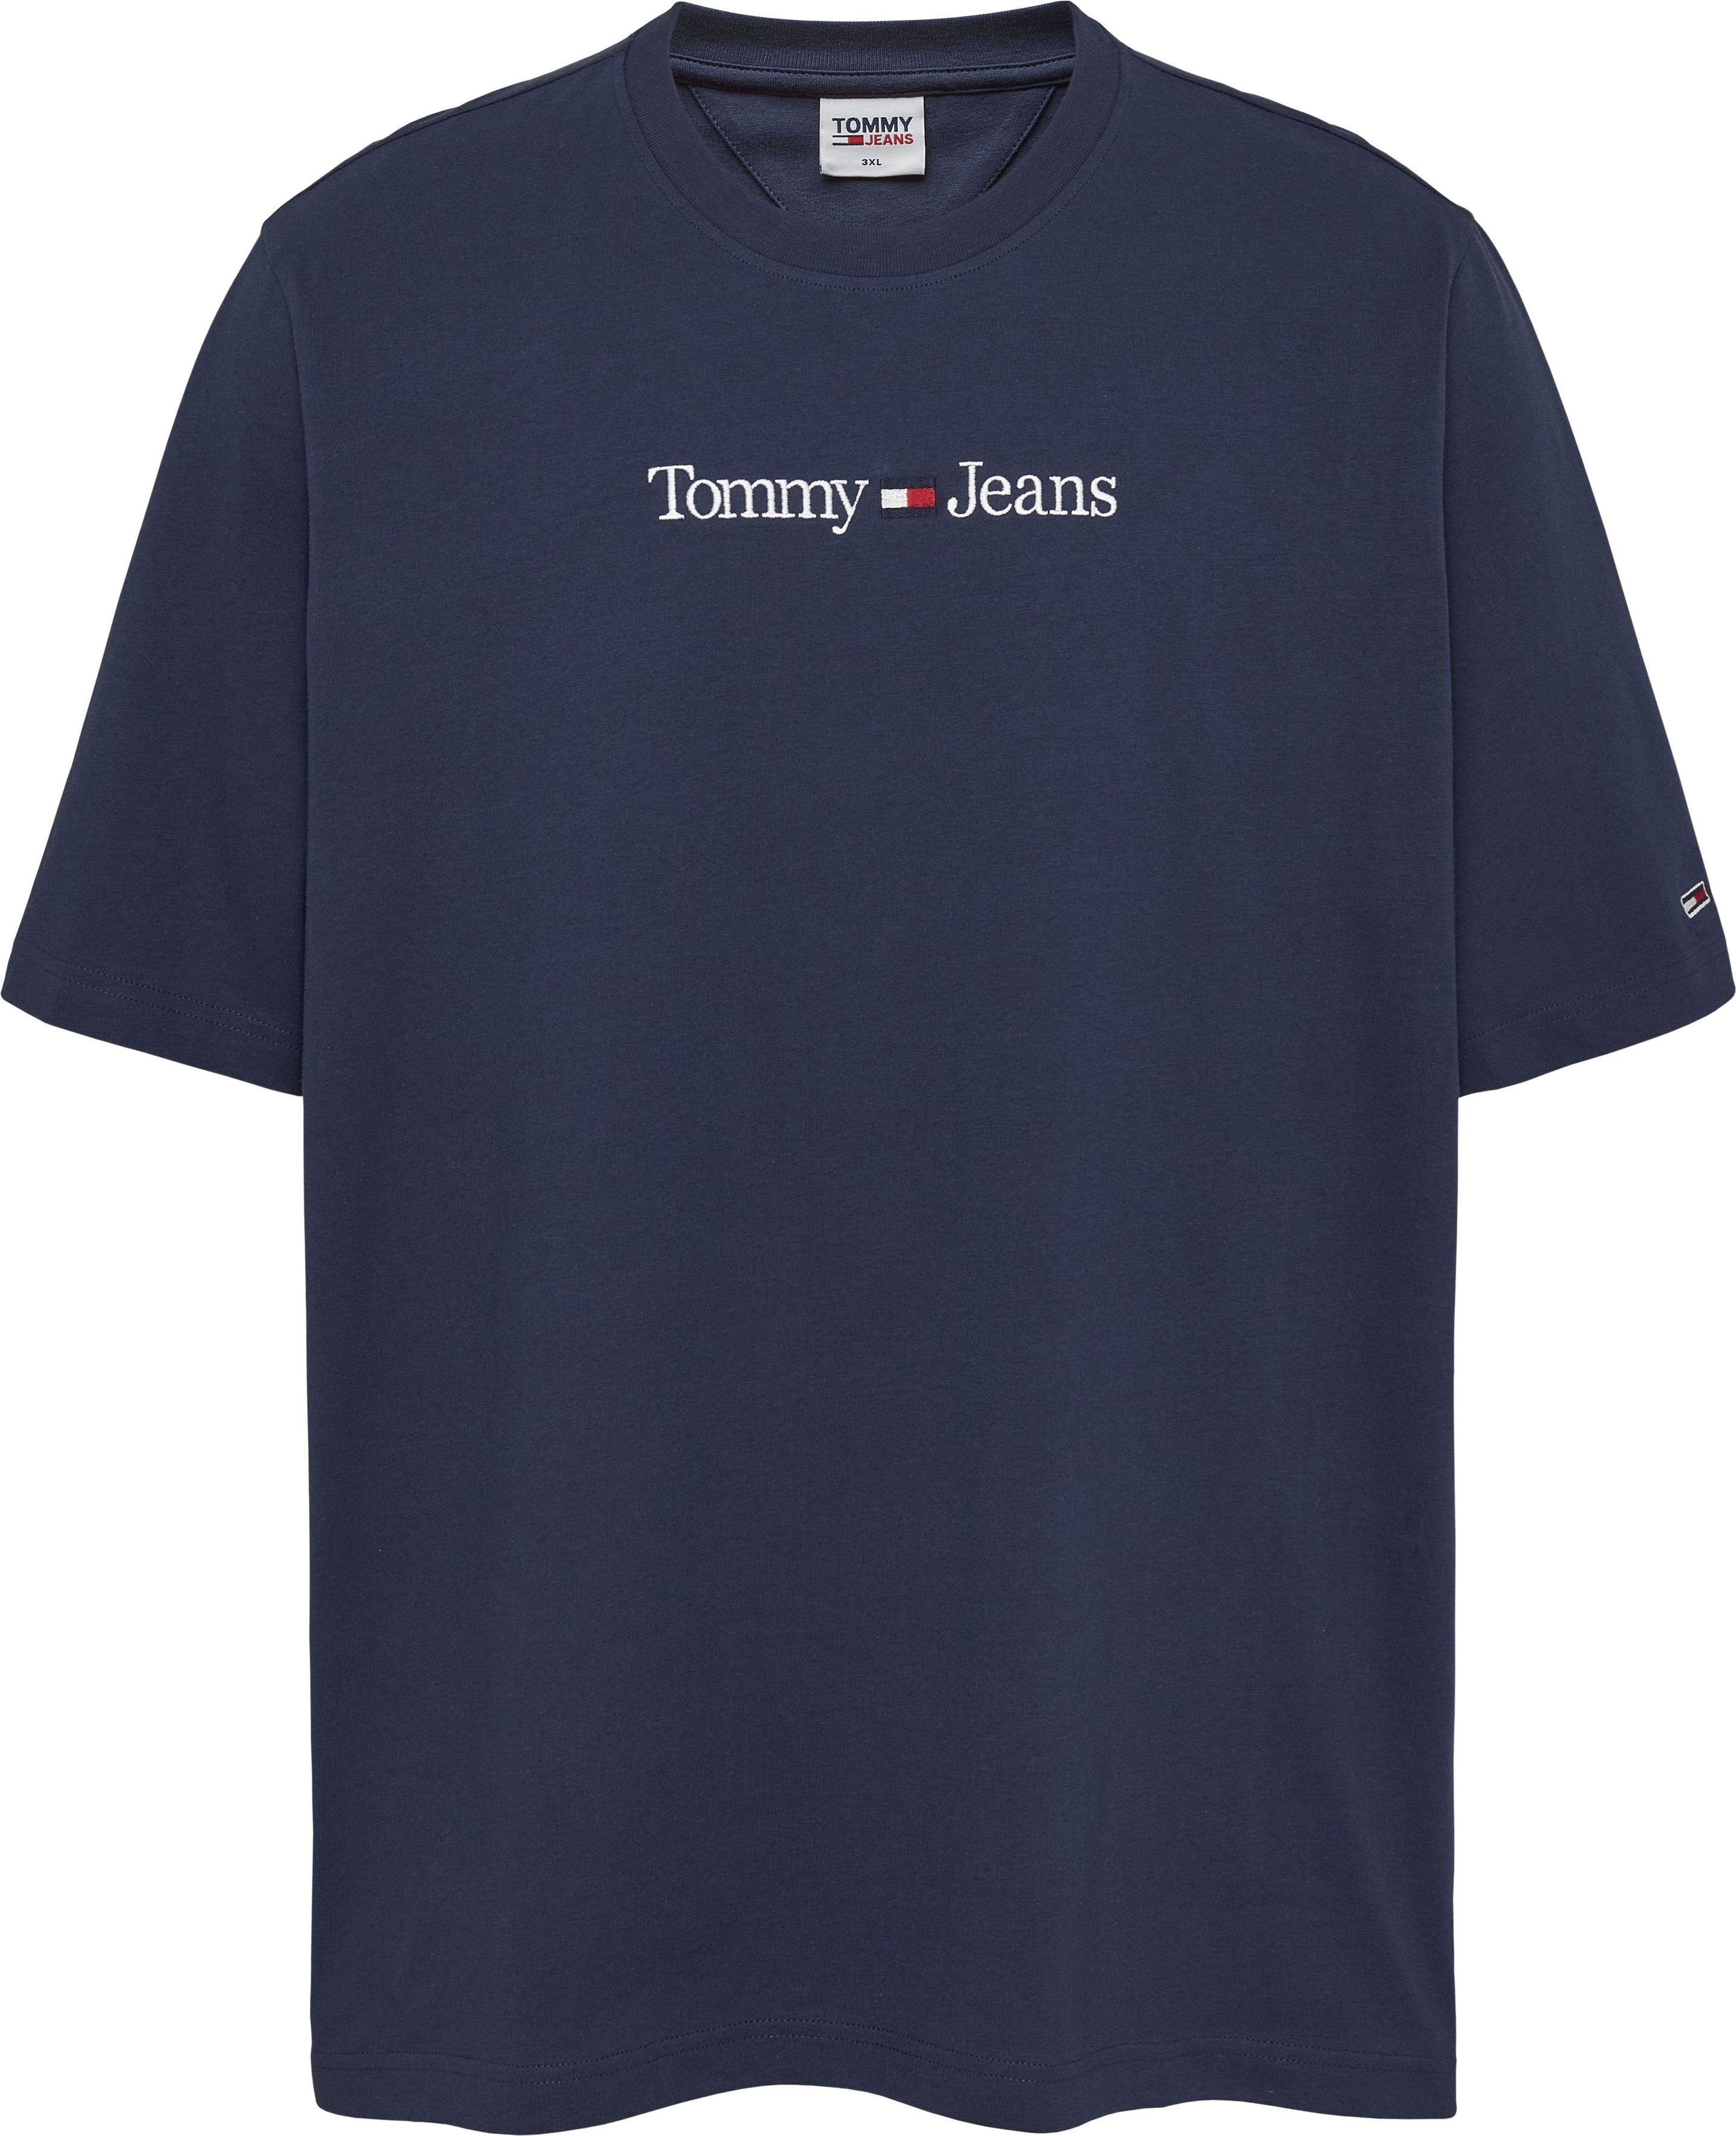 Tommy Jeans PLUS TJM Brust navy LINEAR der T-Shirt mit auf Plus Tommy-Jeans LO Branding